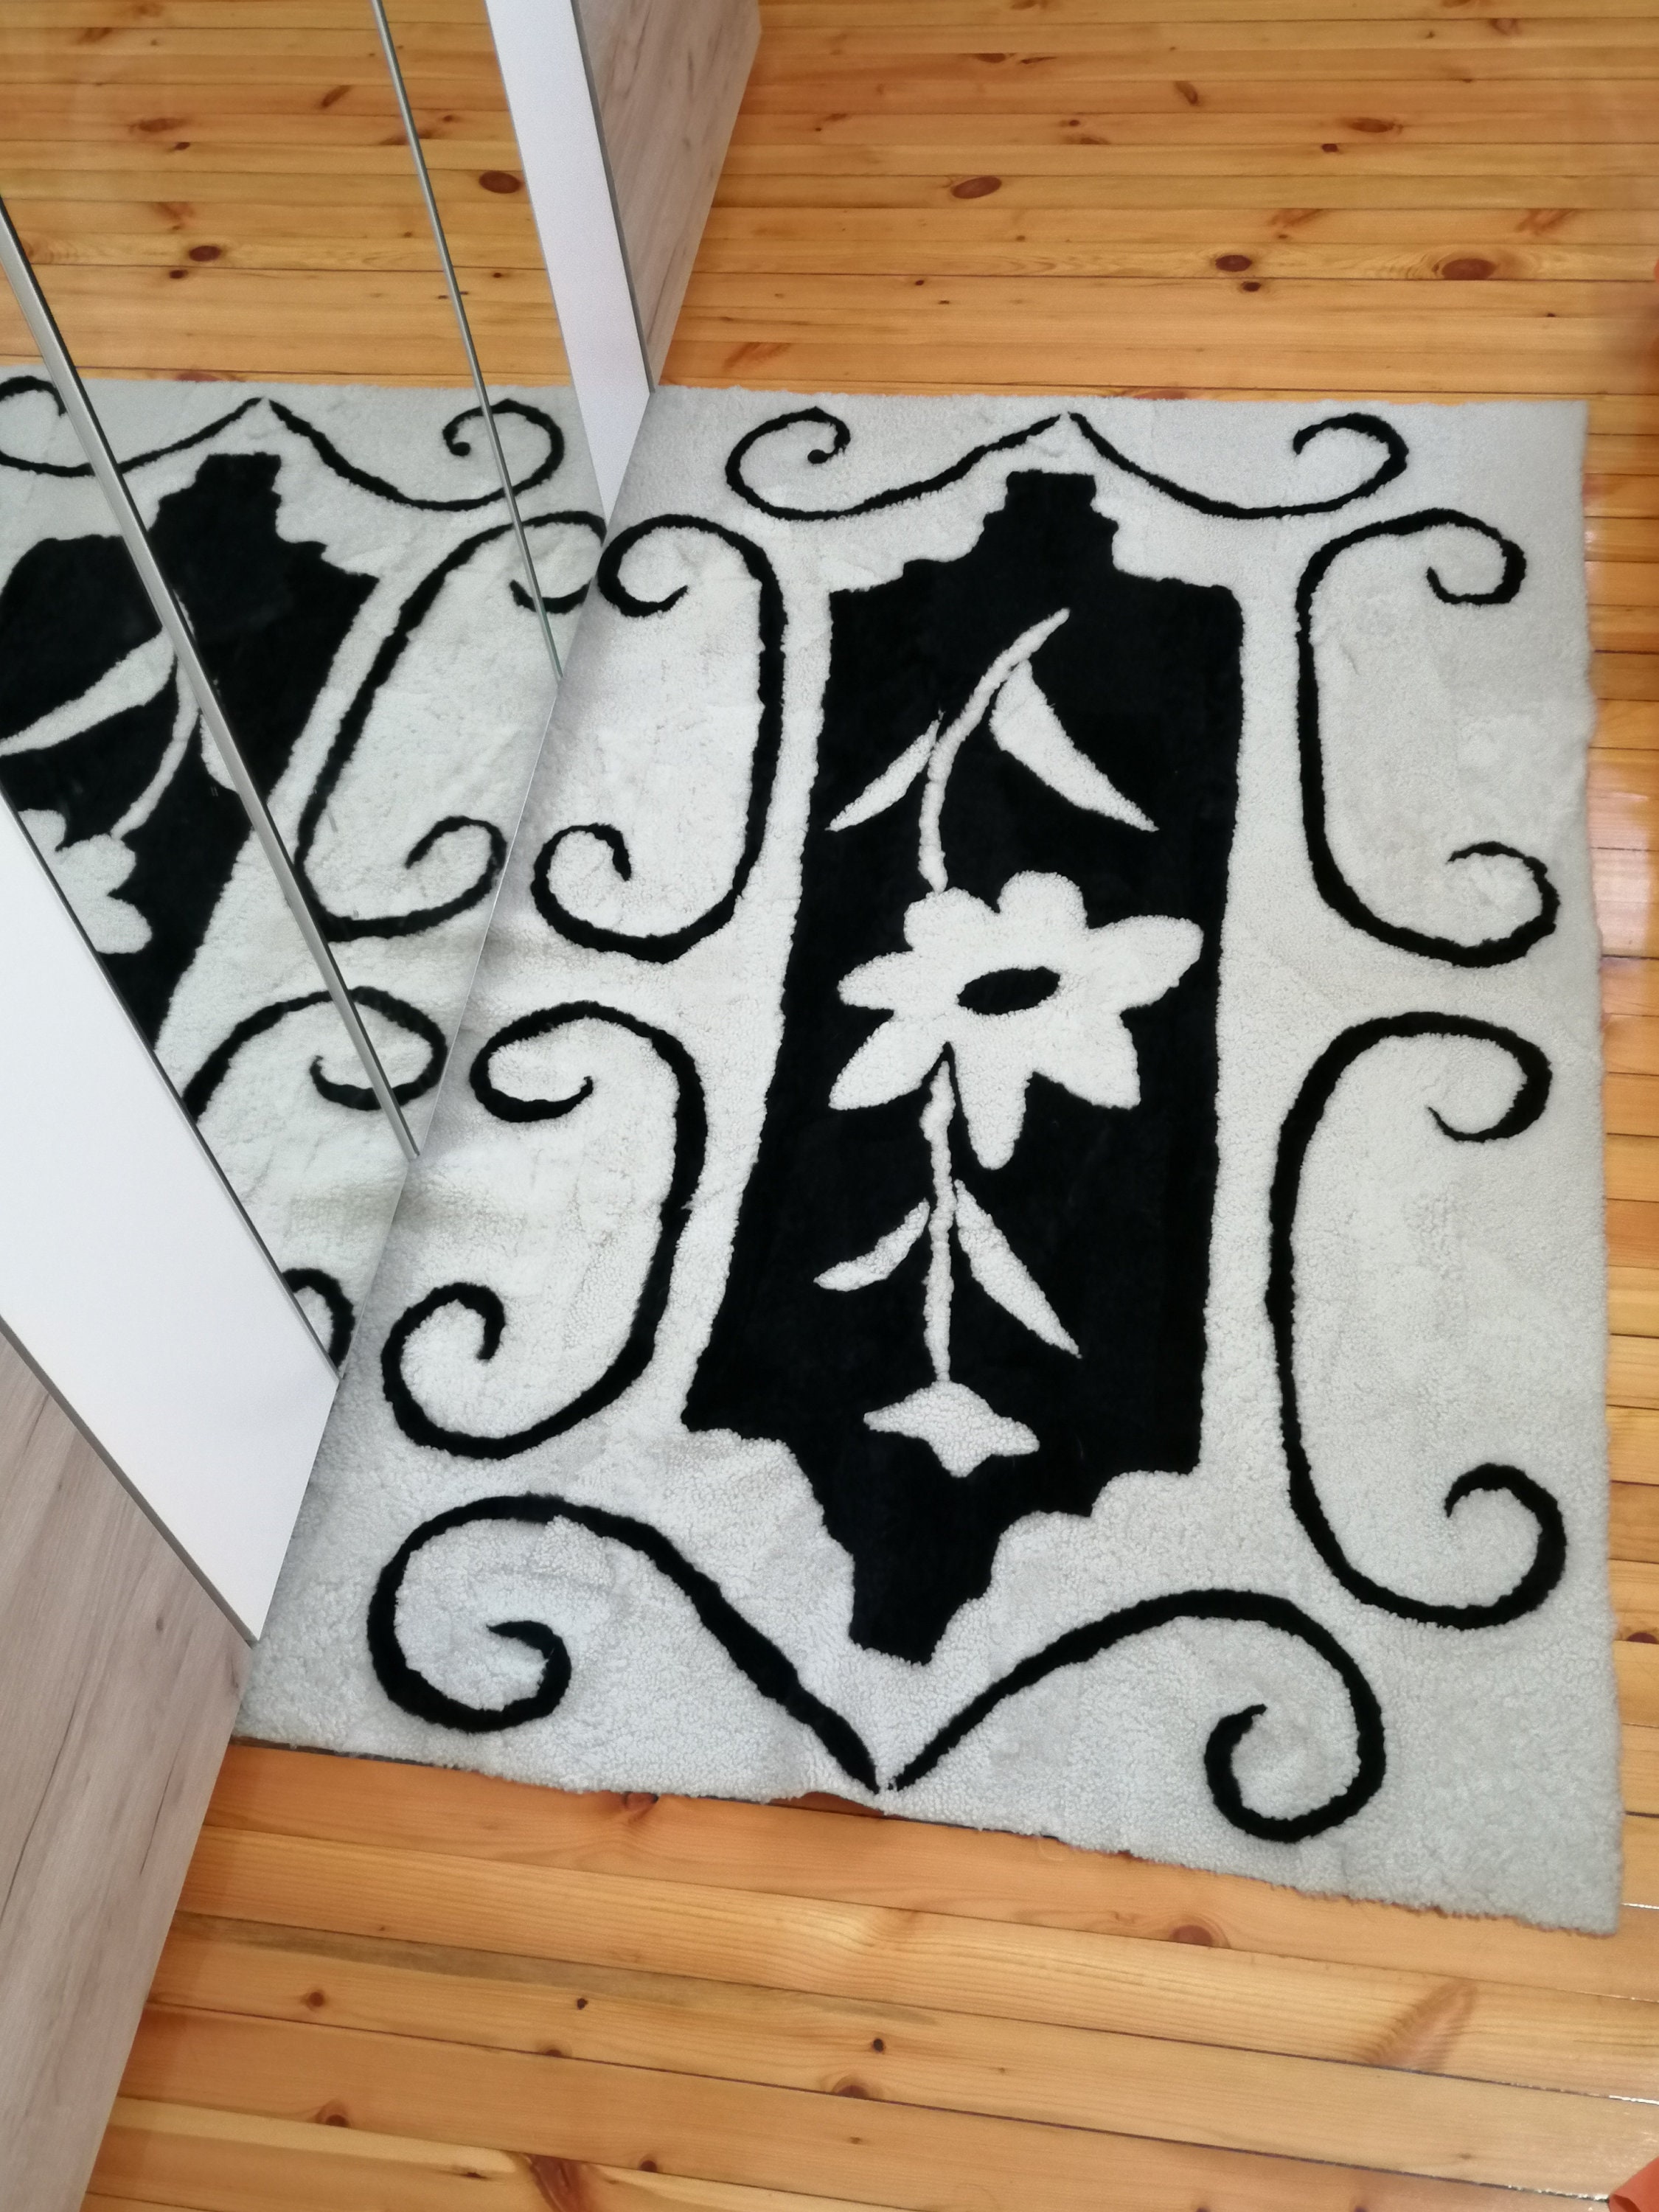 Textil Teppich Teppiche Bezug Pelz Zuhause Luxus Schaffell Langlebig Nützlich 